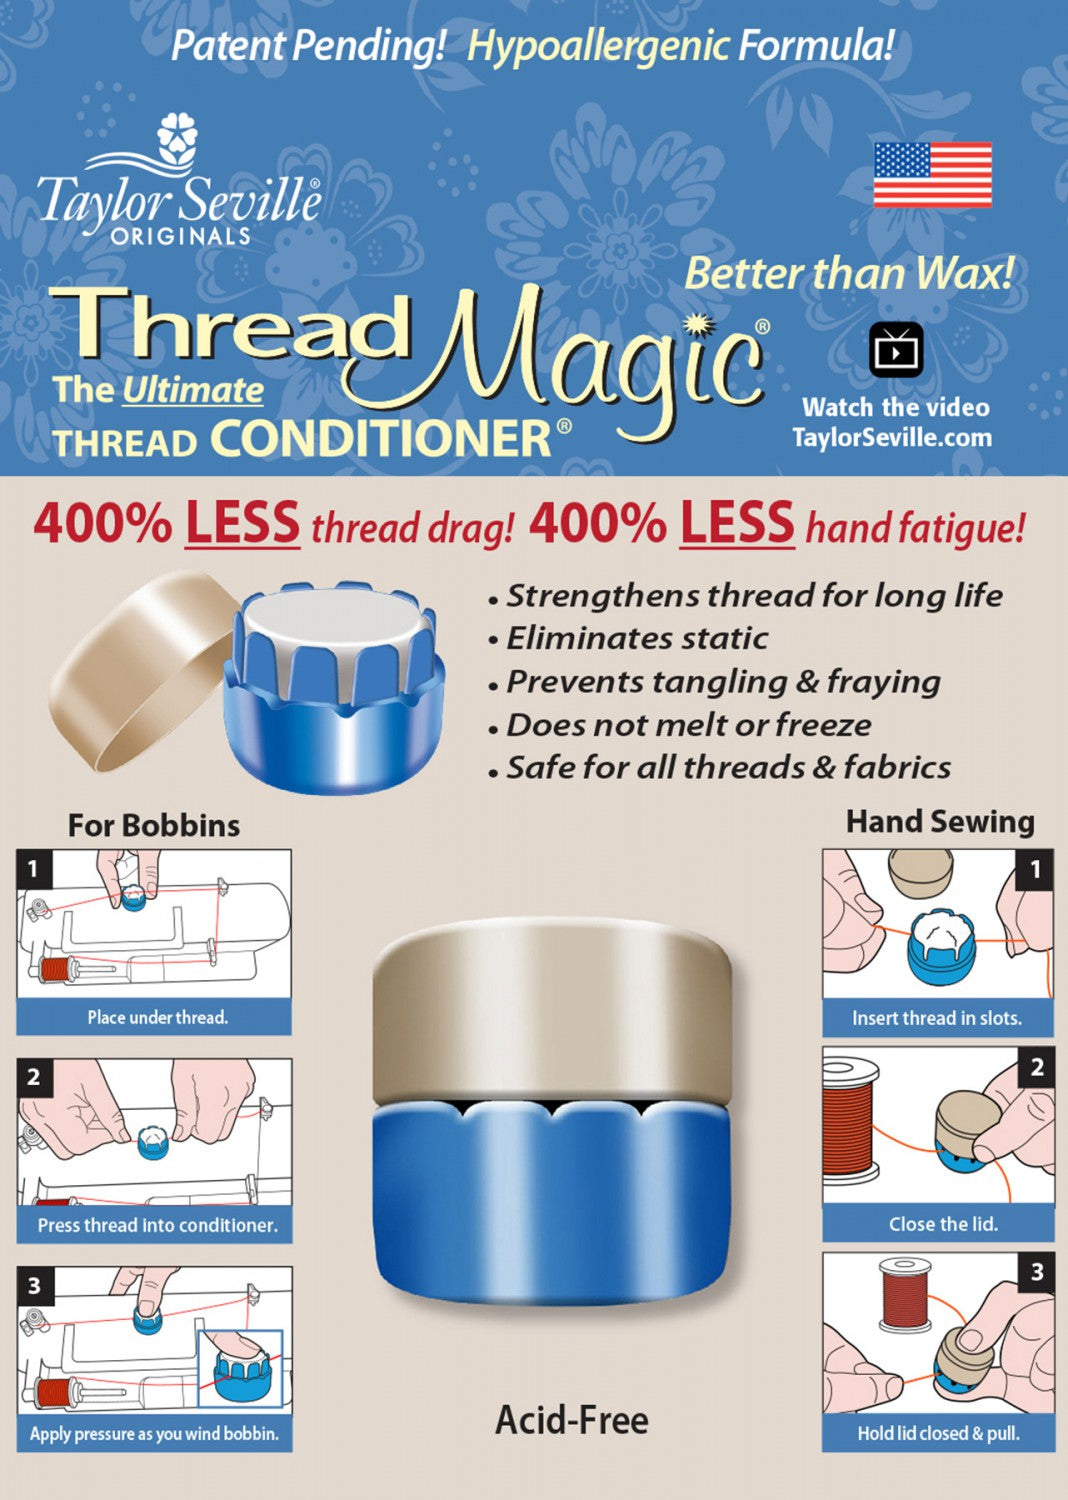 Thread Magic Round - The Ultimate Thread Conditioner